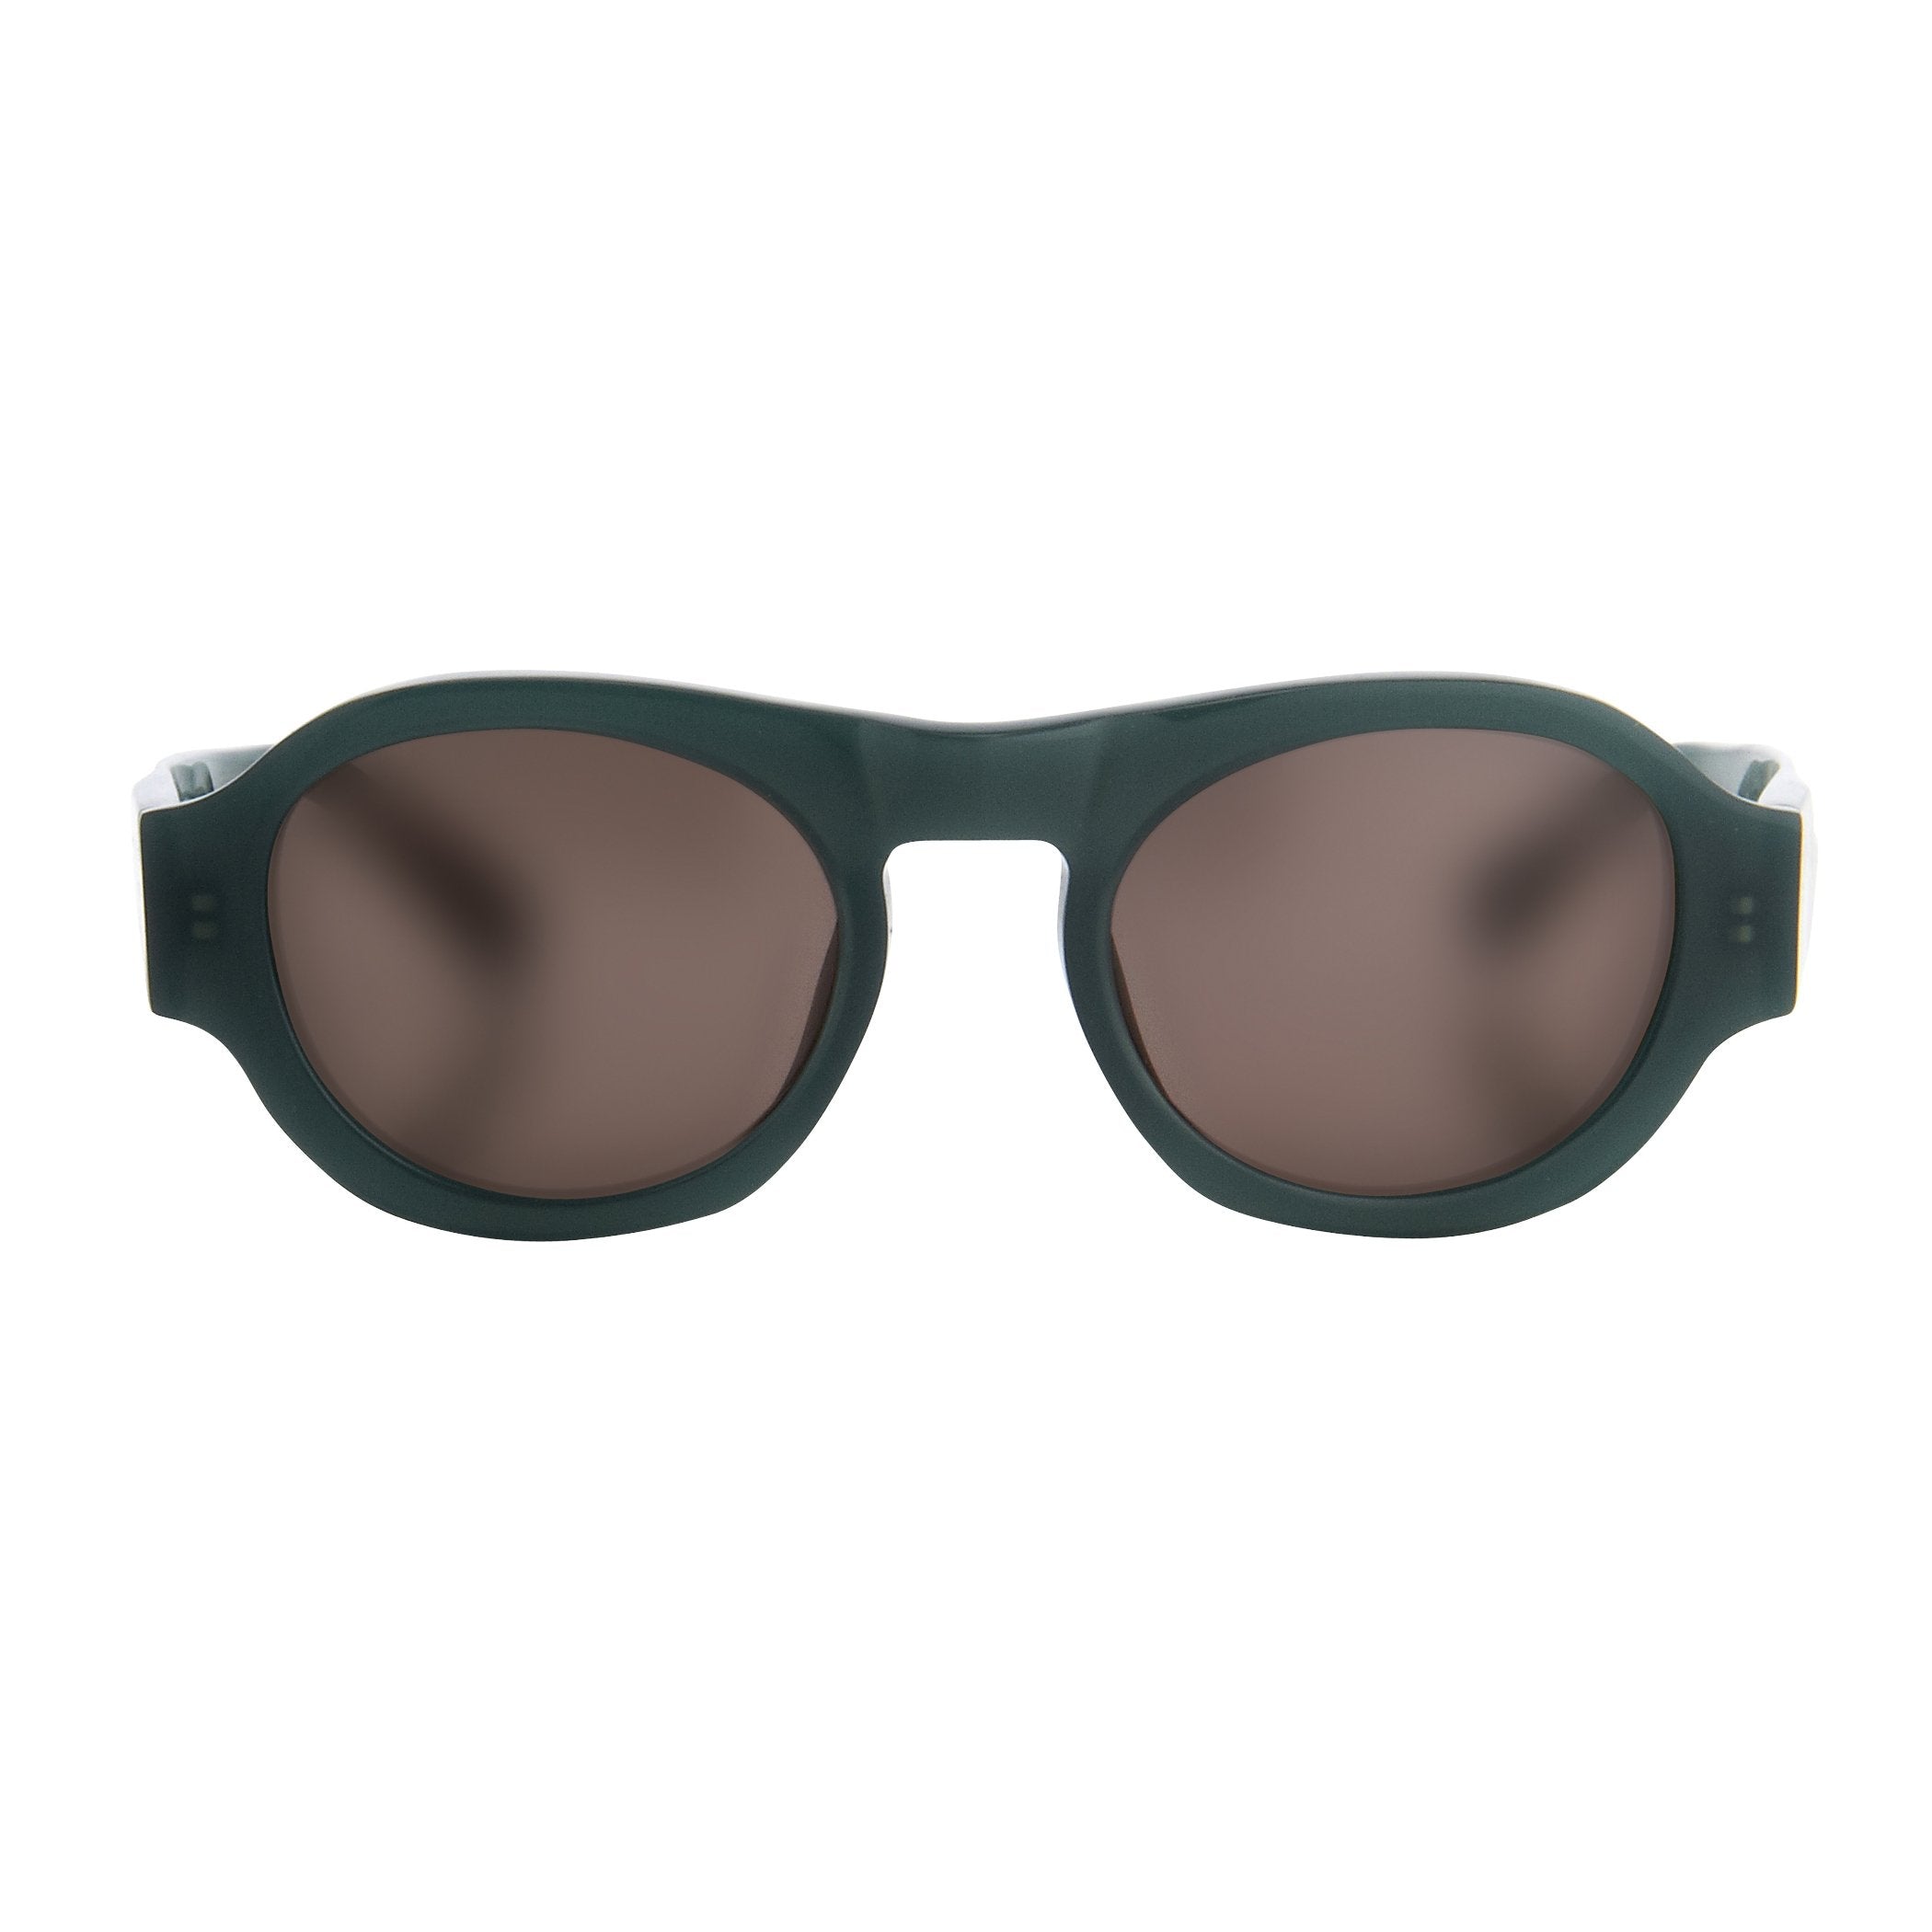 Color_DVN33C4SUN - Dries Van Noten 33 C4 Sunglasses